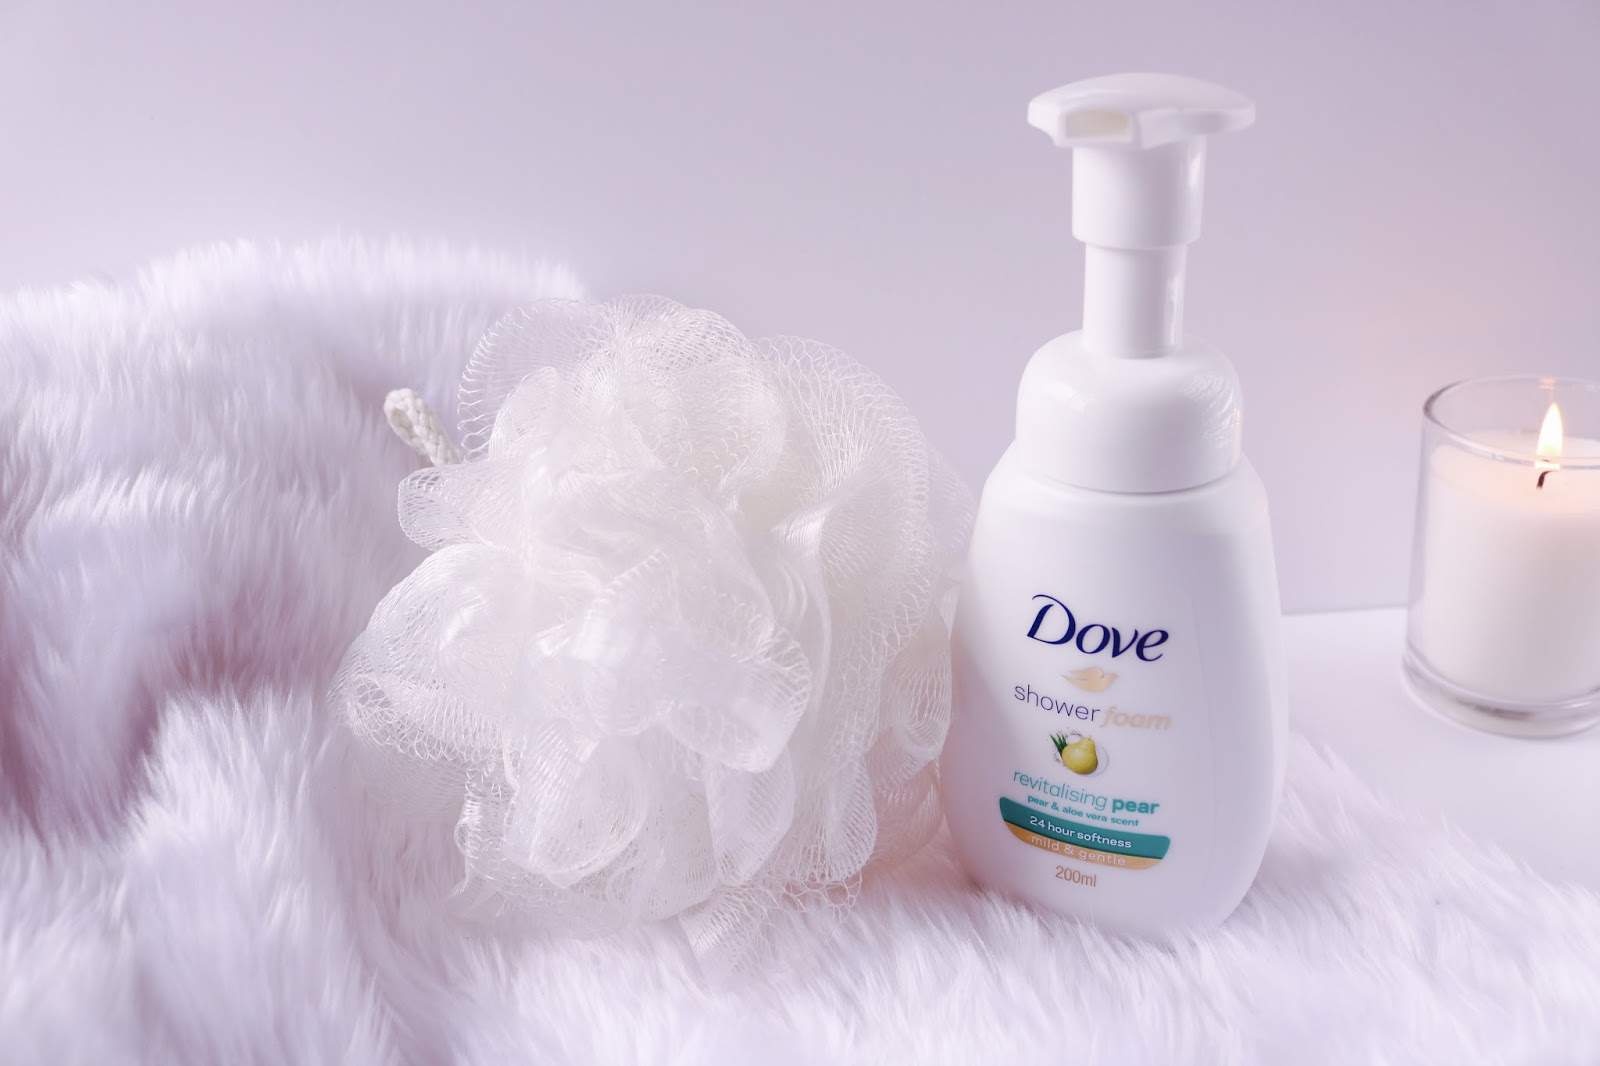 Dove Shower Foam Printable Coupon - Printable Coupons And Deals - Free Dove Soap Coupons Printable